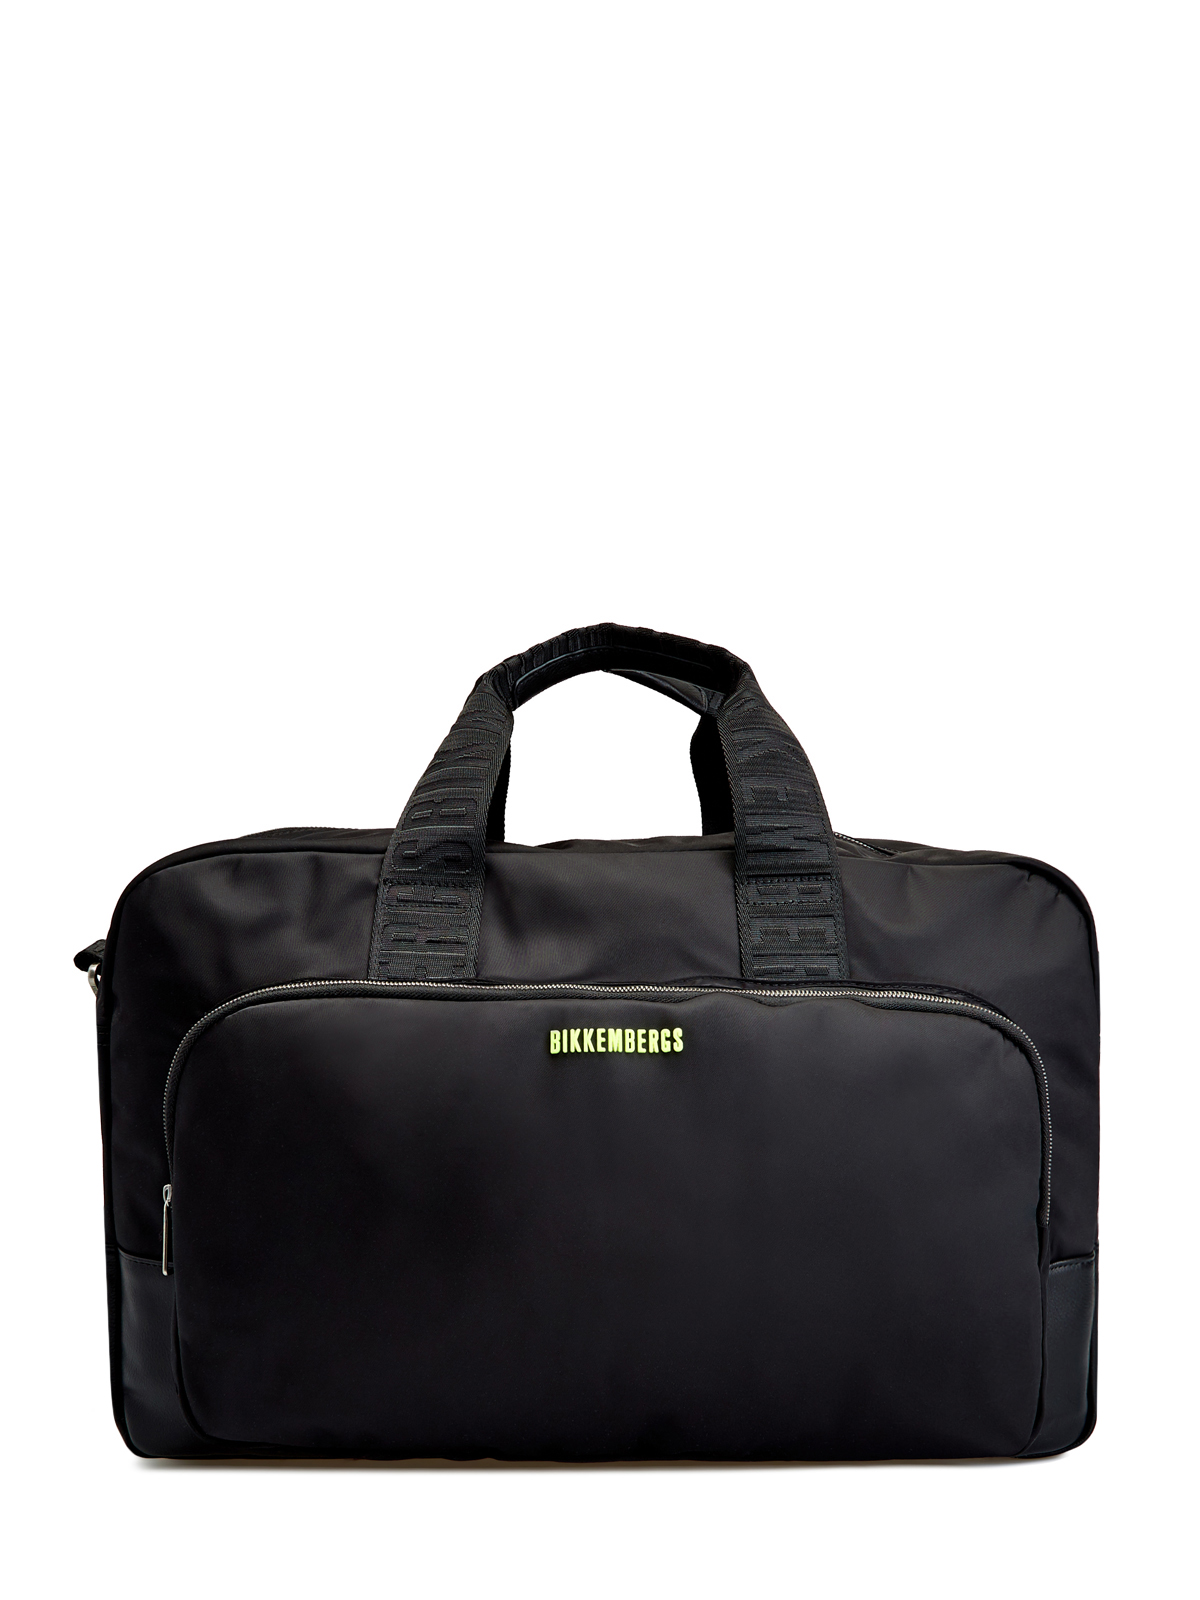 Дорожная сумка Next 3.0 в спортивном стиле BIKKEMBERGS, цвет черный, размер M - фото 1